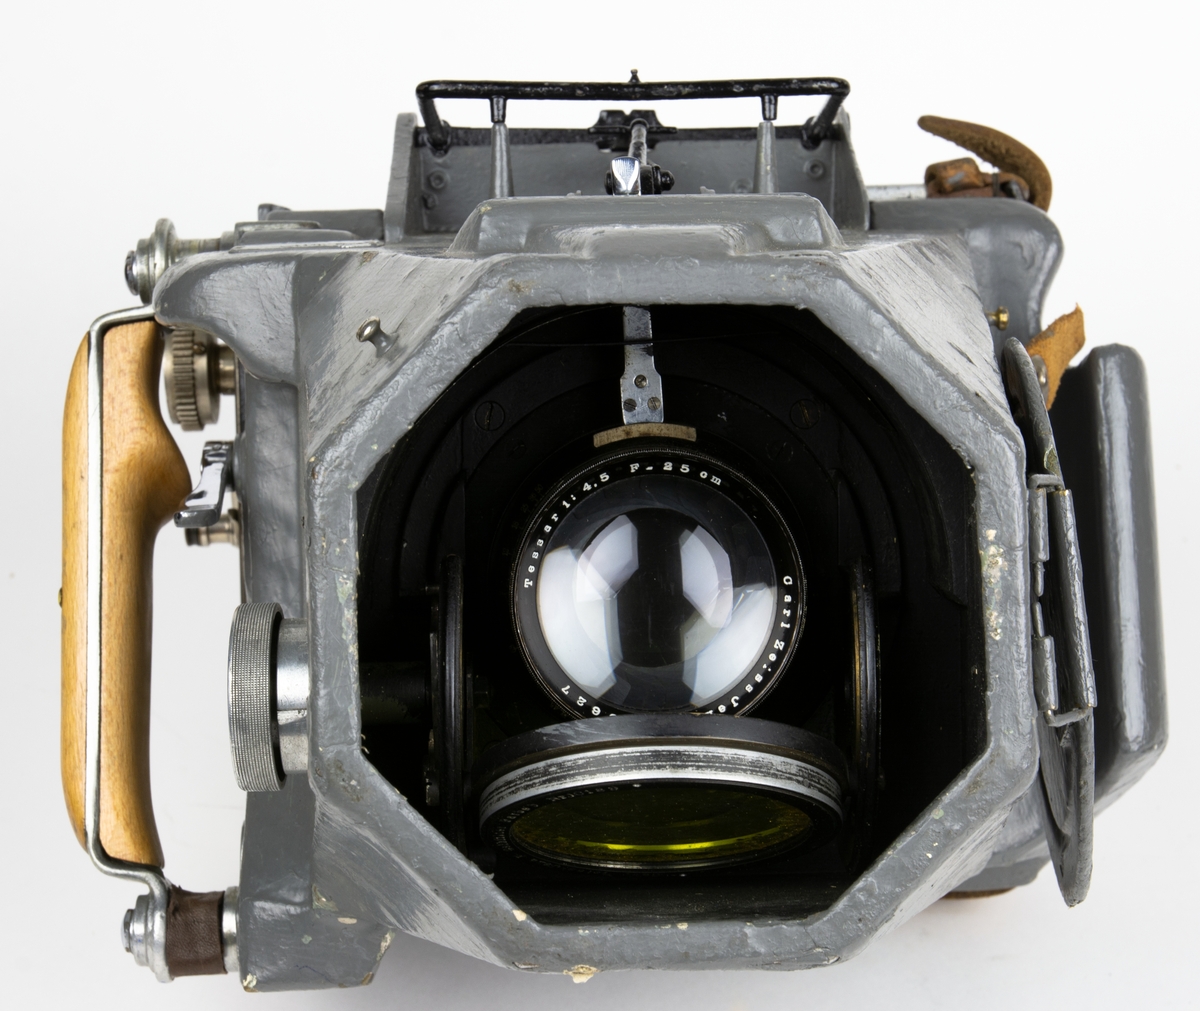 Handkamera, flygkamera av typ HK 1A. 
Bildformat: 13x18 cm. Objektiv: Tessar 1:4,5. F=25,11 cm. Carl Zeiss Jena nr.303627
Utrustad med fällbart gulfilter och objektivskydd. Kassett saknas.

Kamerakroppen är tillverkad i trämaterial. Slutarmekanismen och kassettenhet är lätt demonterbara medan objektivet är av fast typ. Sökaren utgöres av en nedfällbar ramsökare med pelarkorn. Kameran har ett objektivskydd med gångjärn och fäststropp.
Kameran är ytbehandlad med lackfärg i armegrå nyans. 

Till kameran hör förvaringslåda.